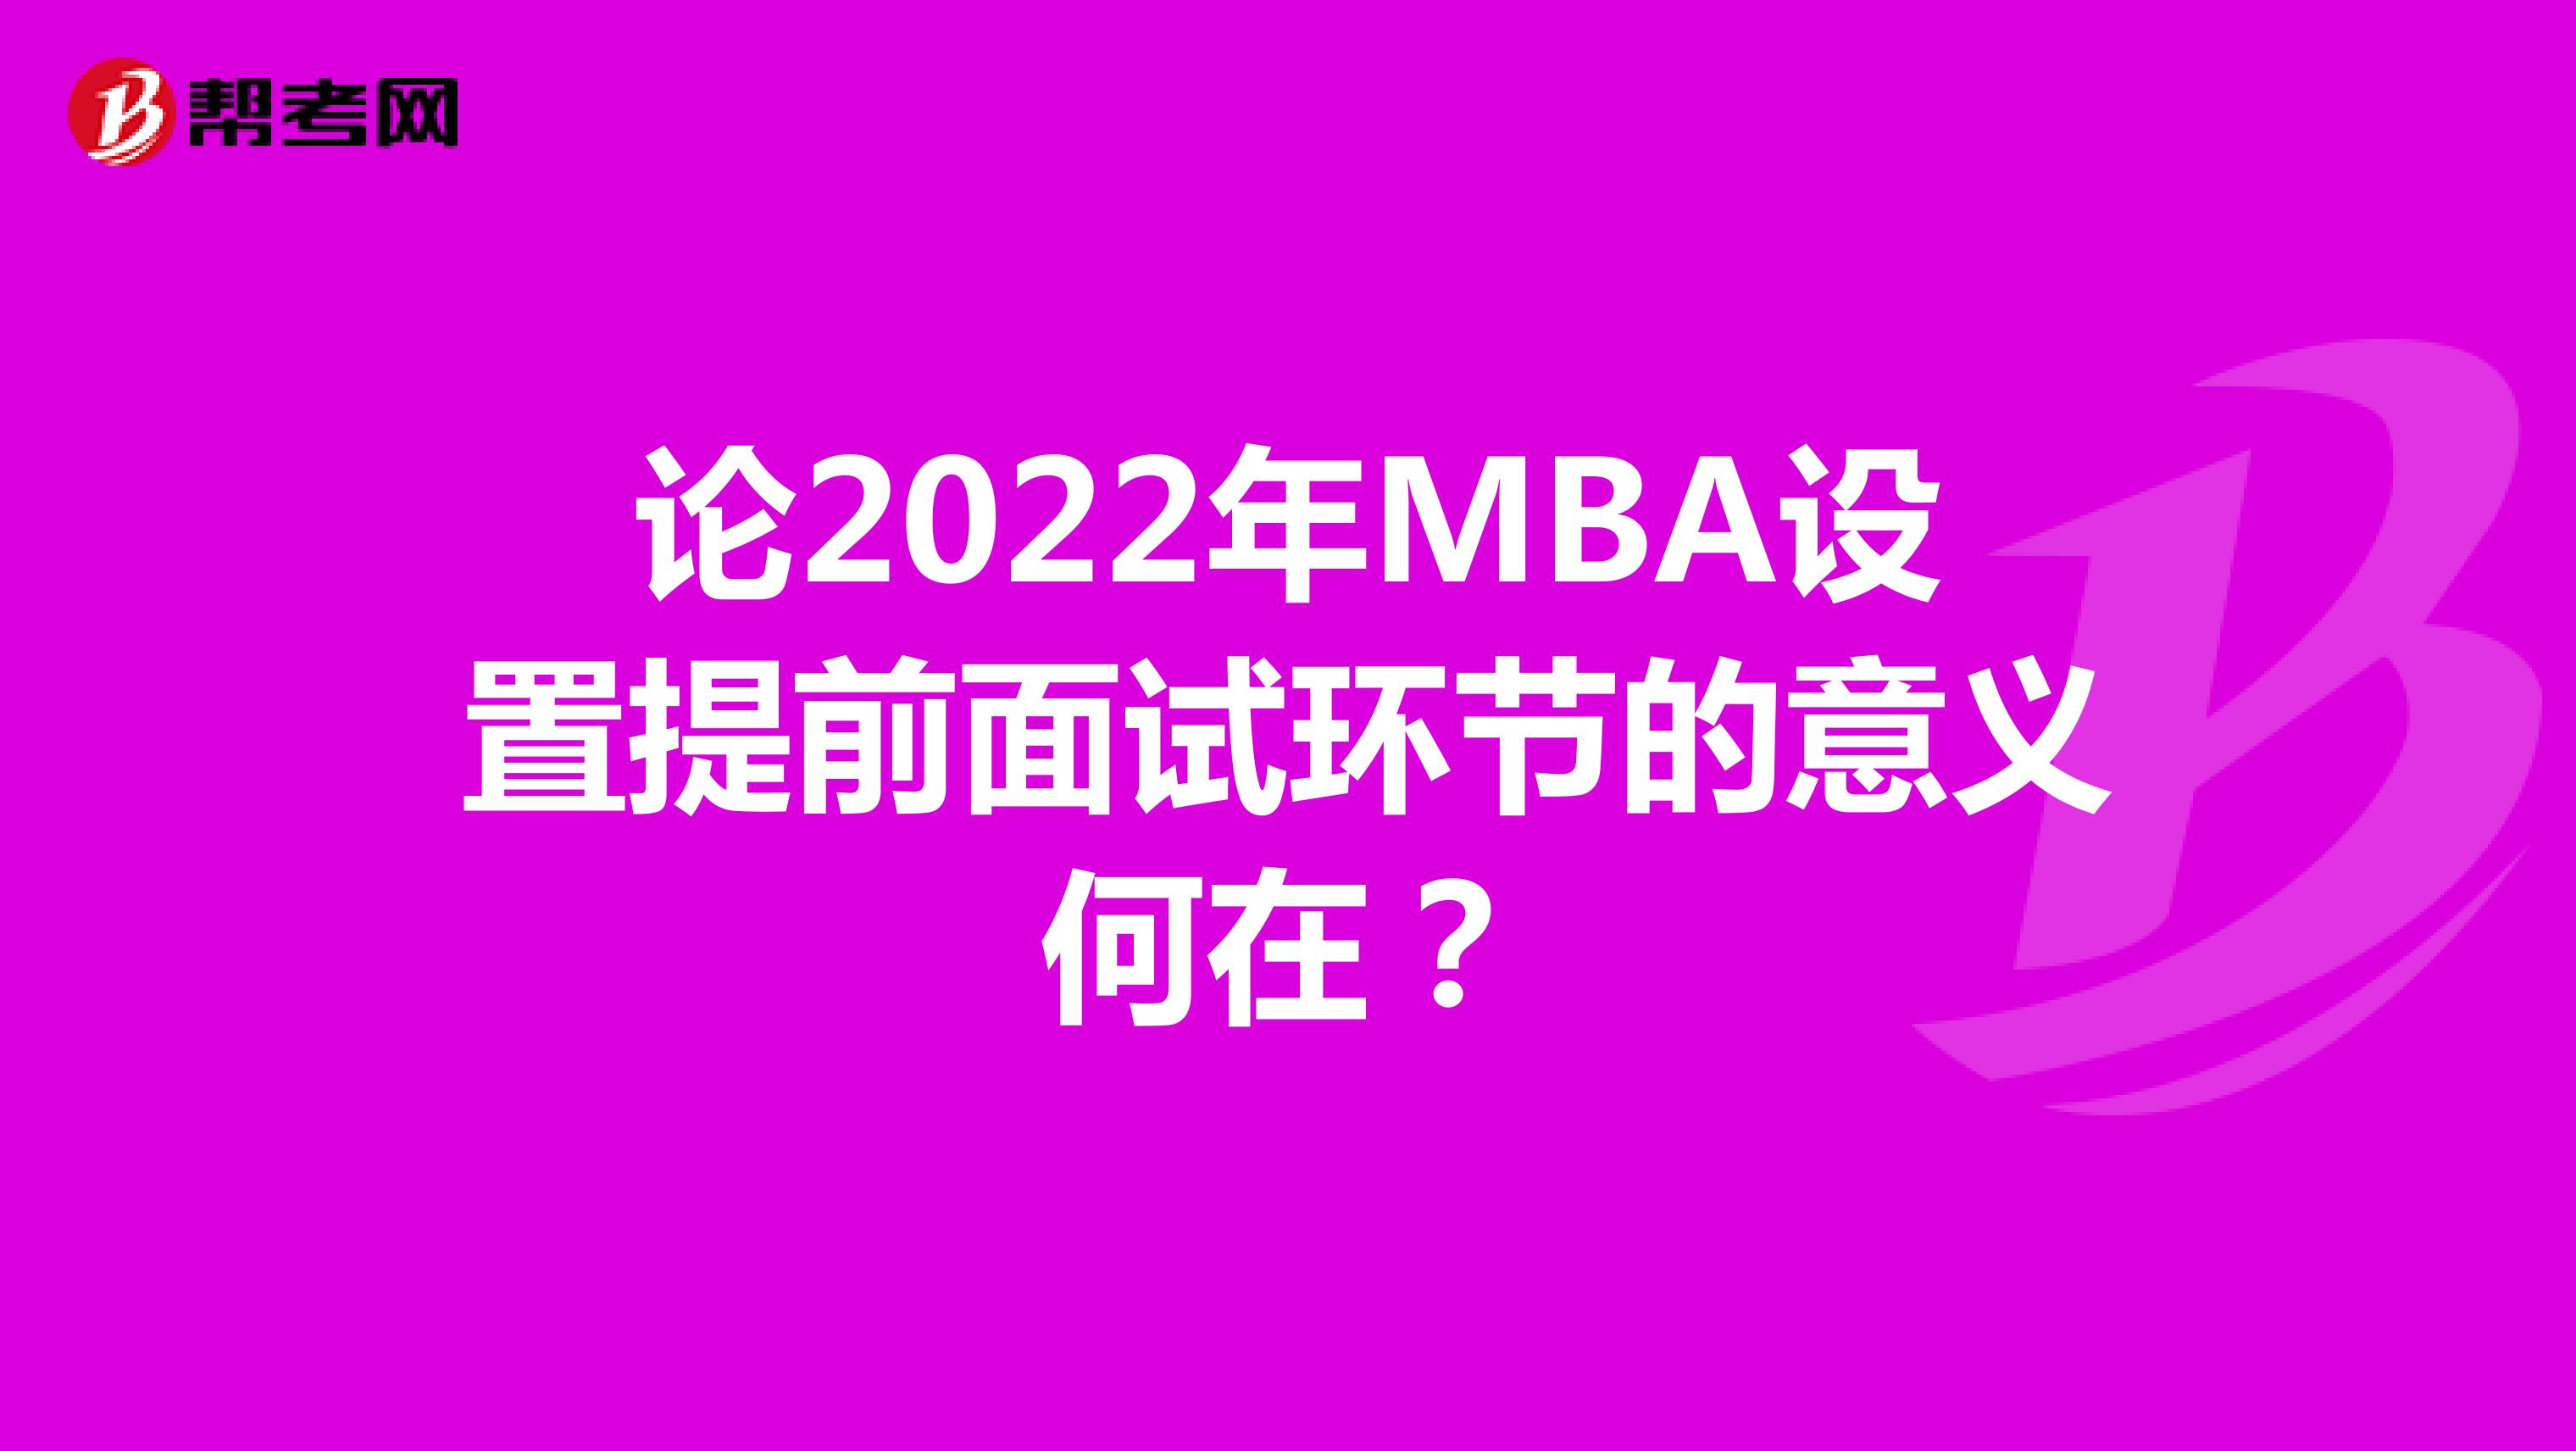 论2022年MBA设置提前面试环节的意义何在？